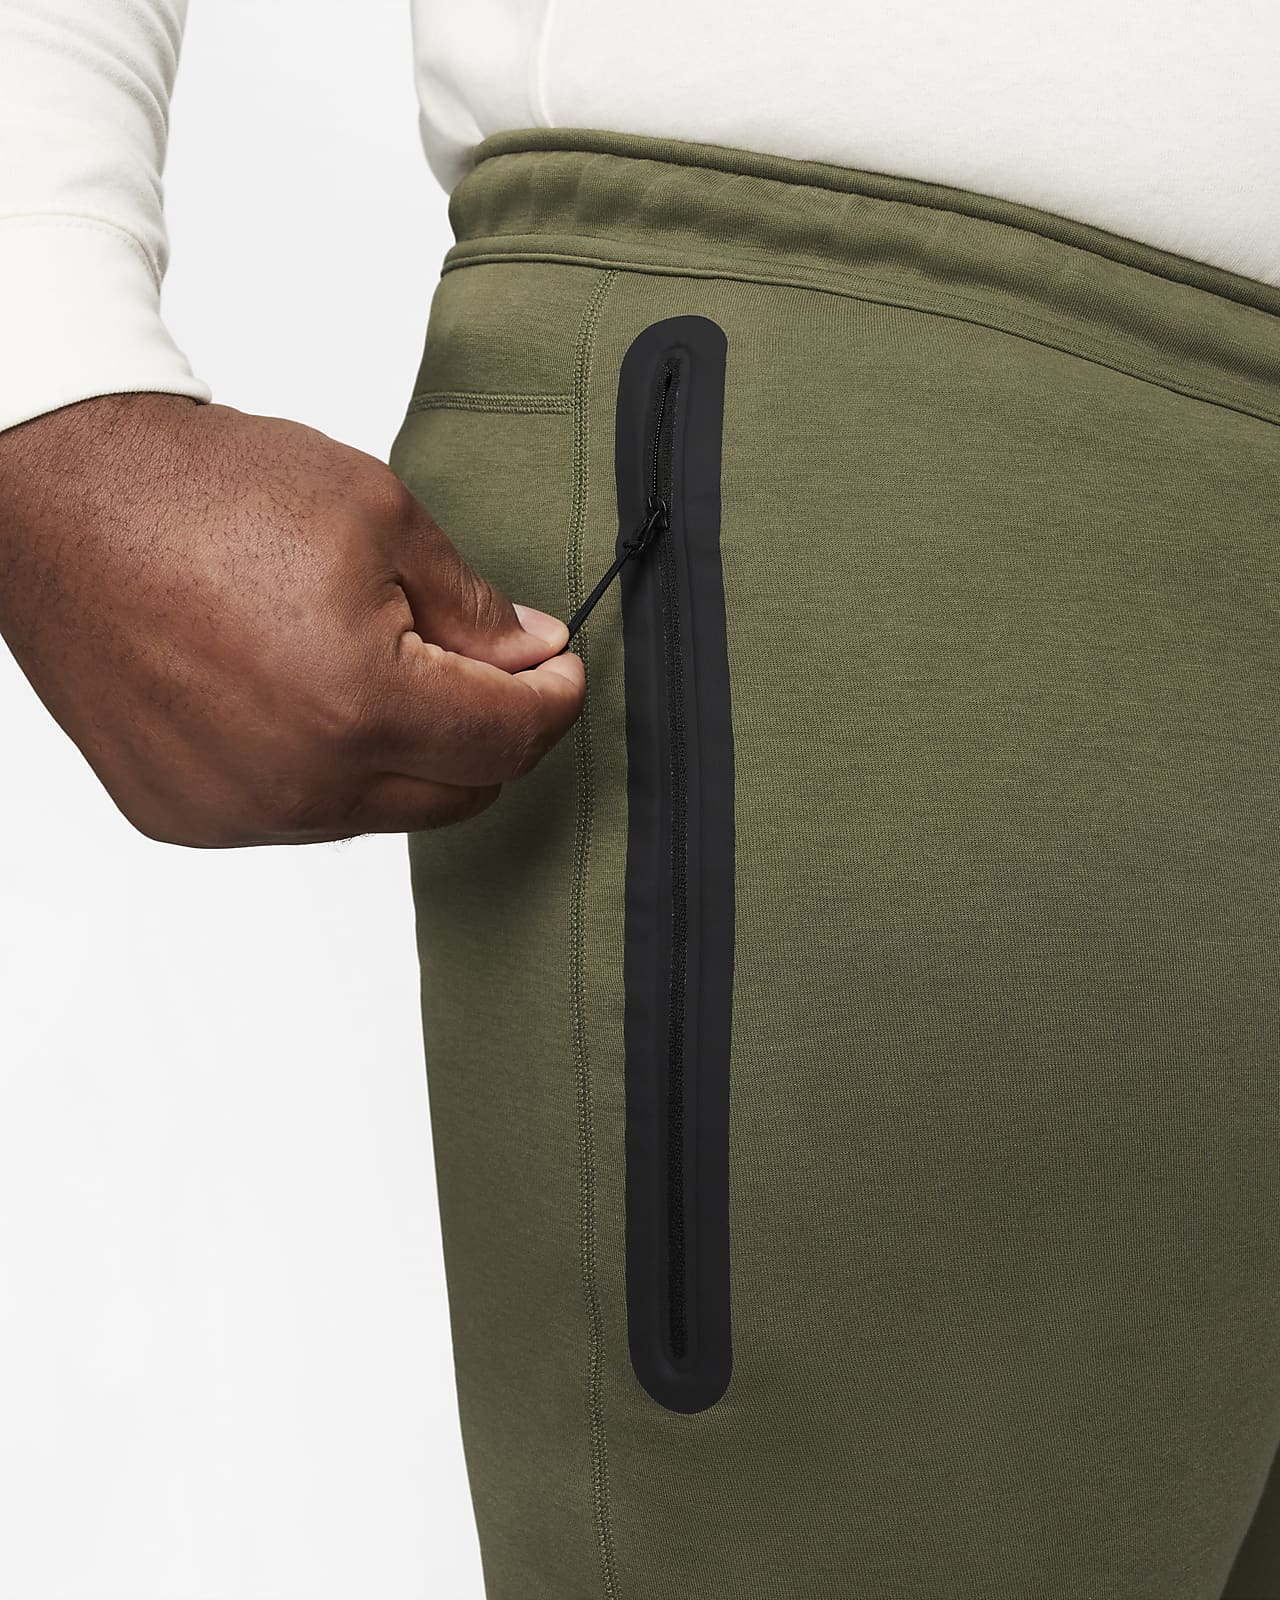 Pantalon de survêtement Nike Tech Fleece - Homme - Noir - Fitness